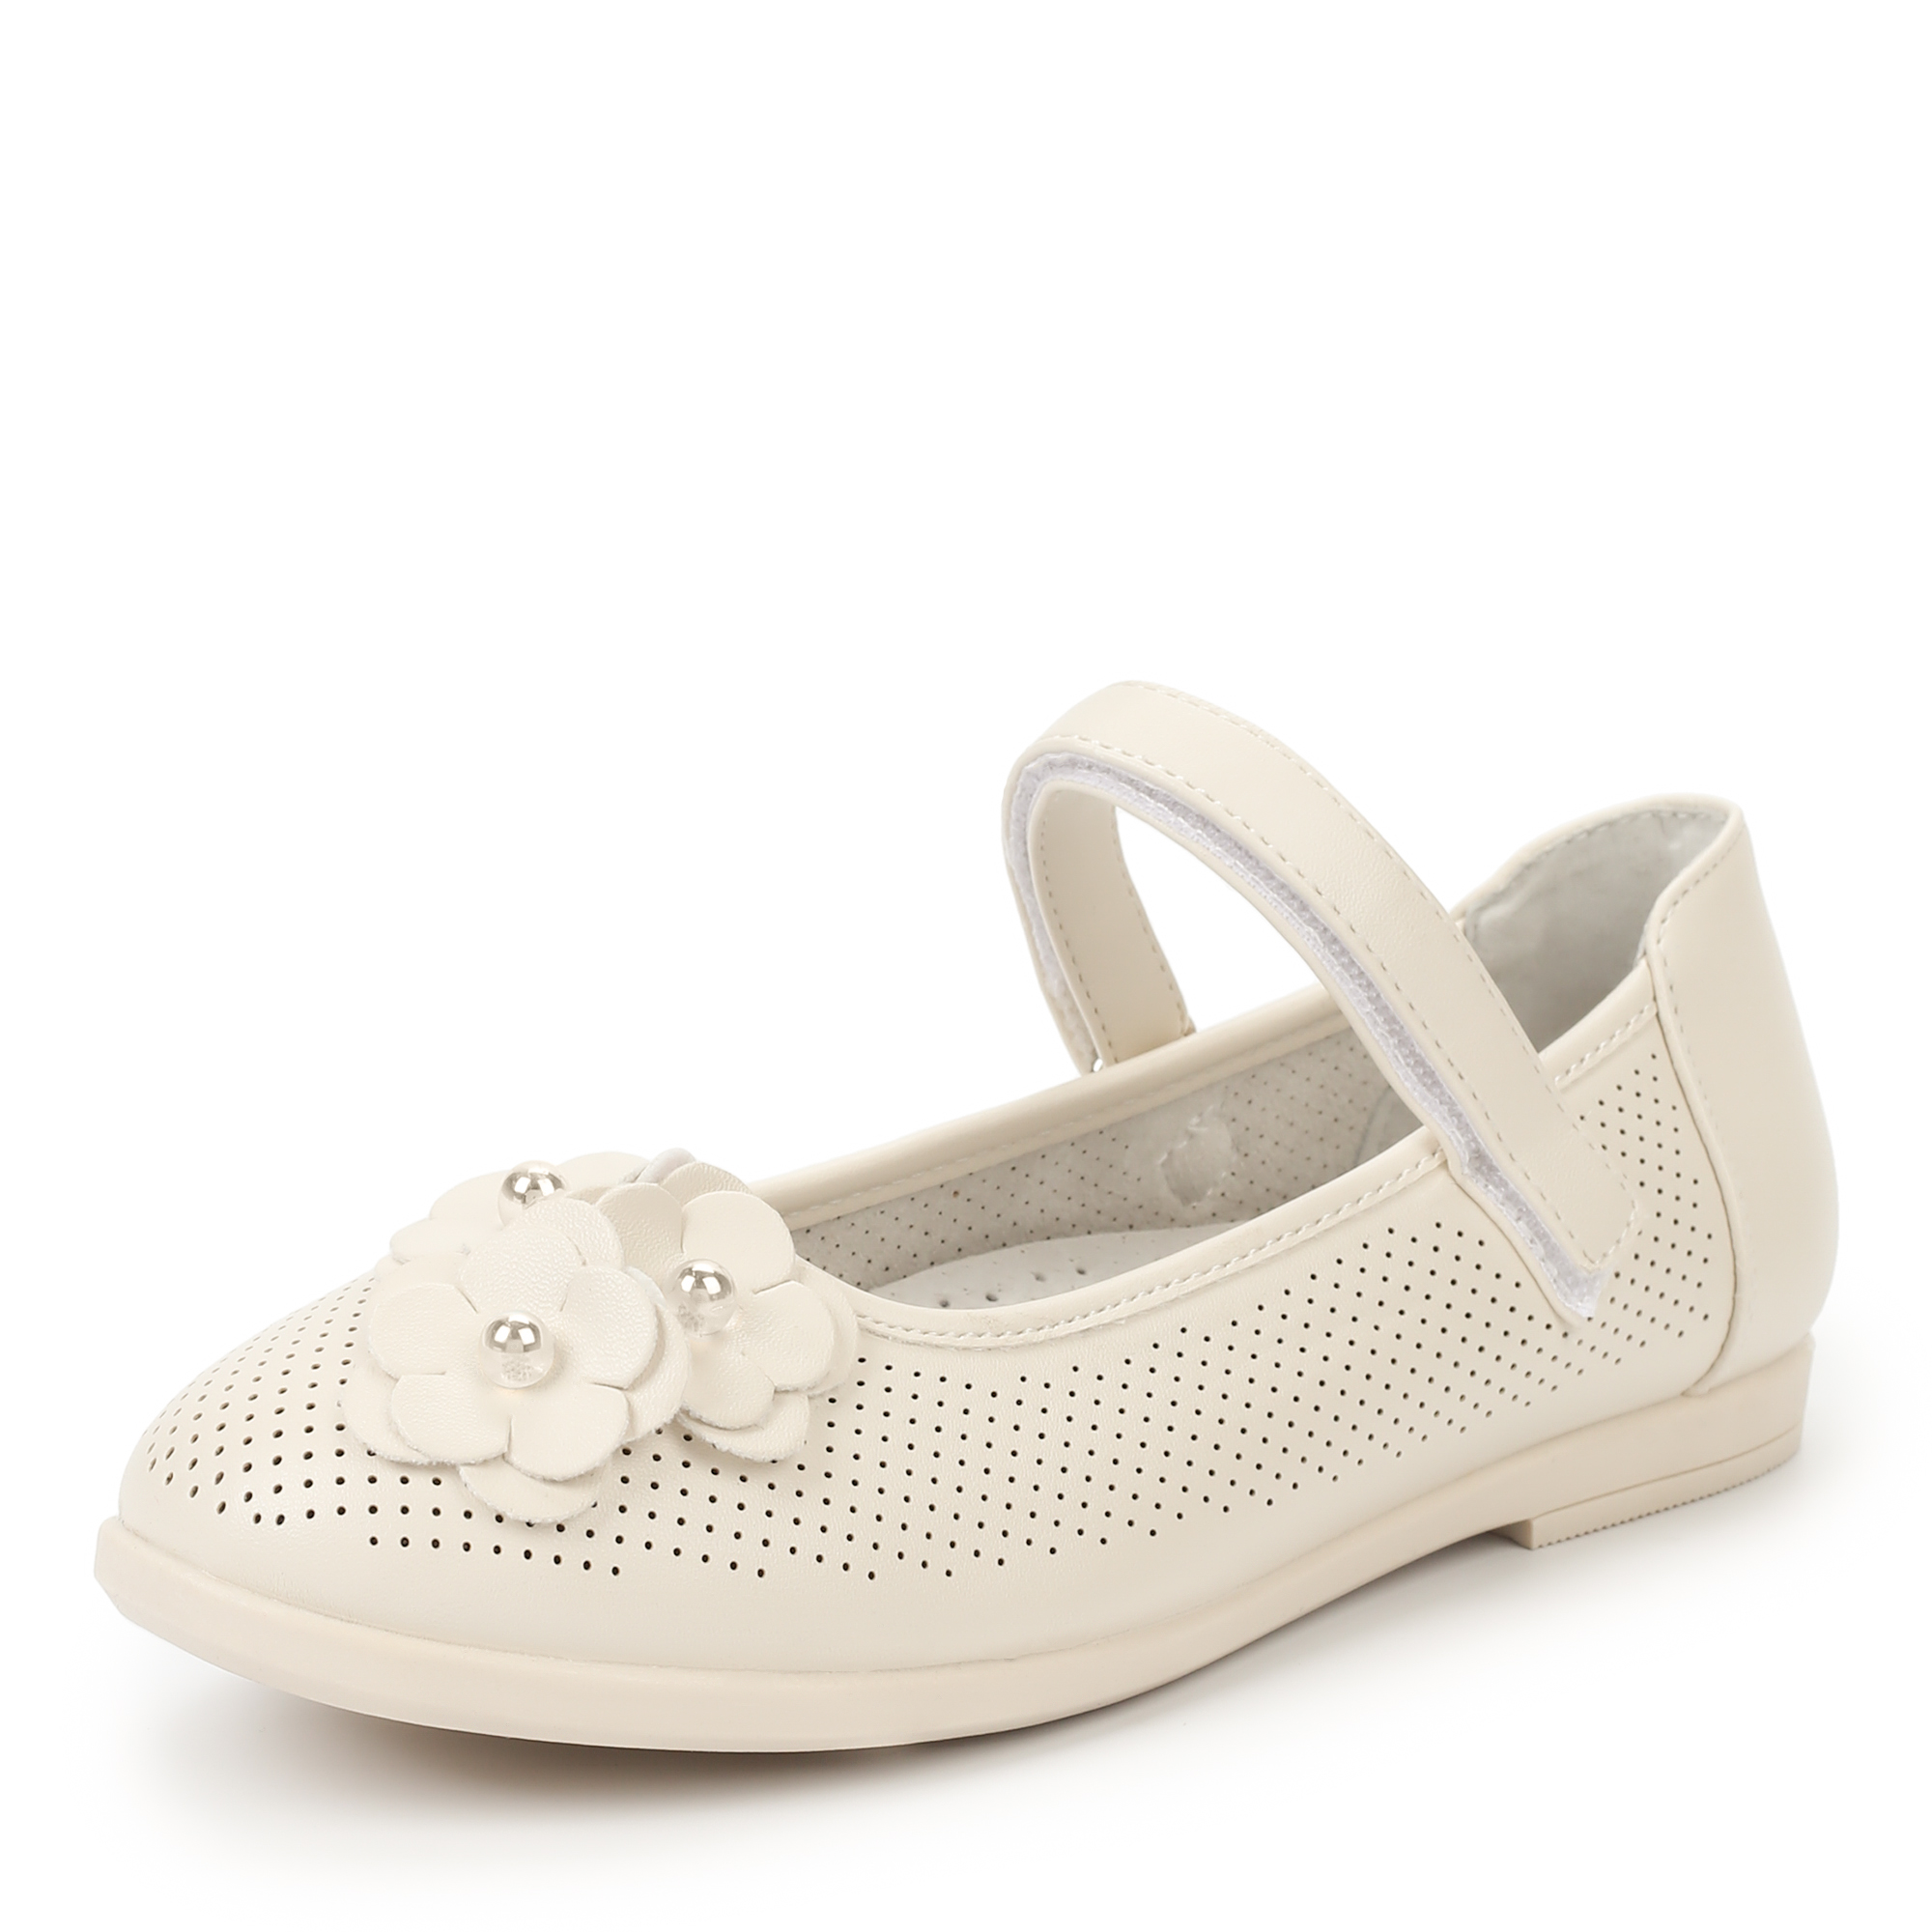 Обувь для девочек MUNZ YOUNG 174-041C-1601, цвет белый, размер 30 - фото 2